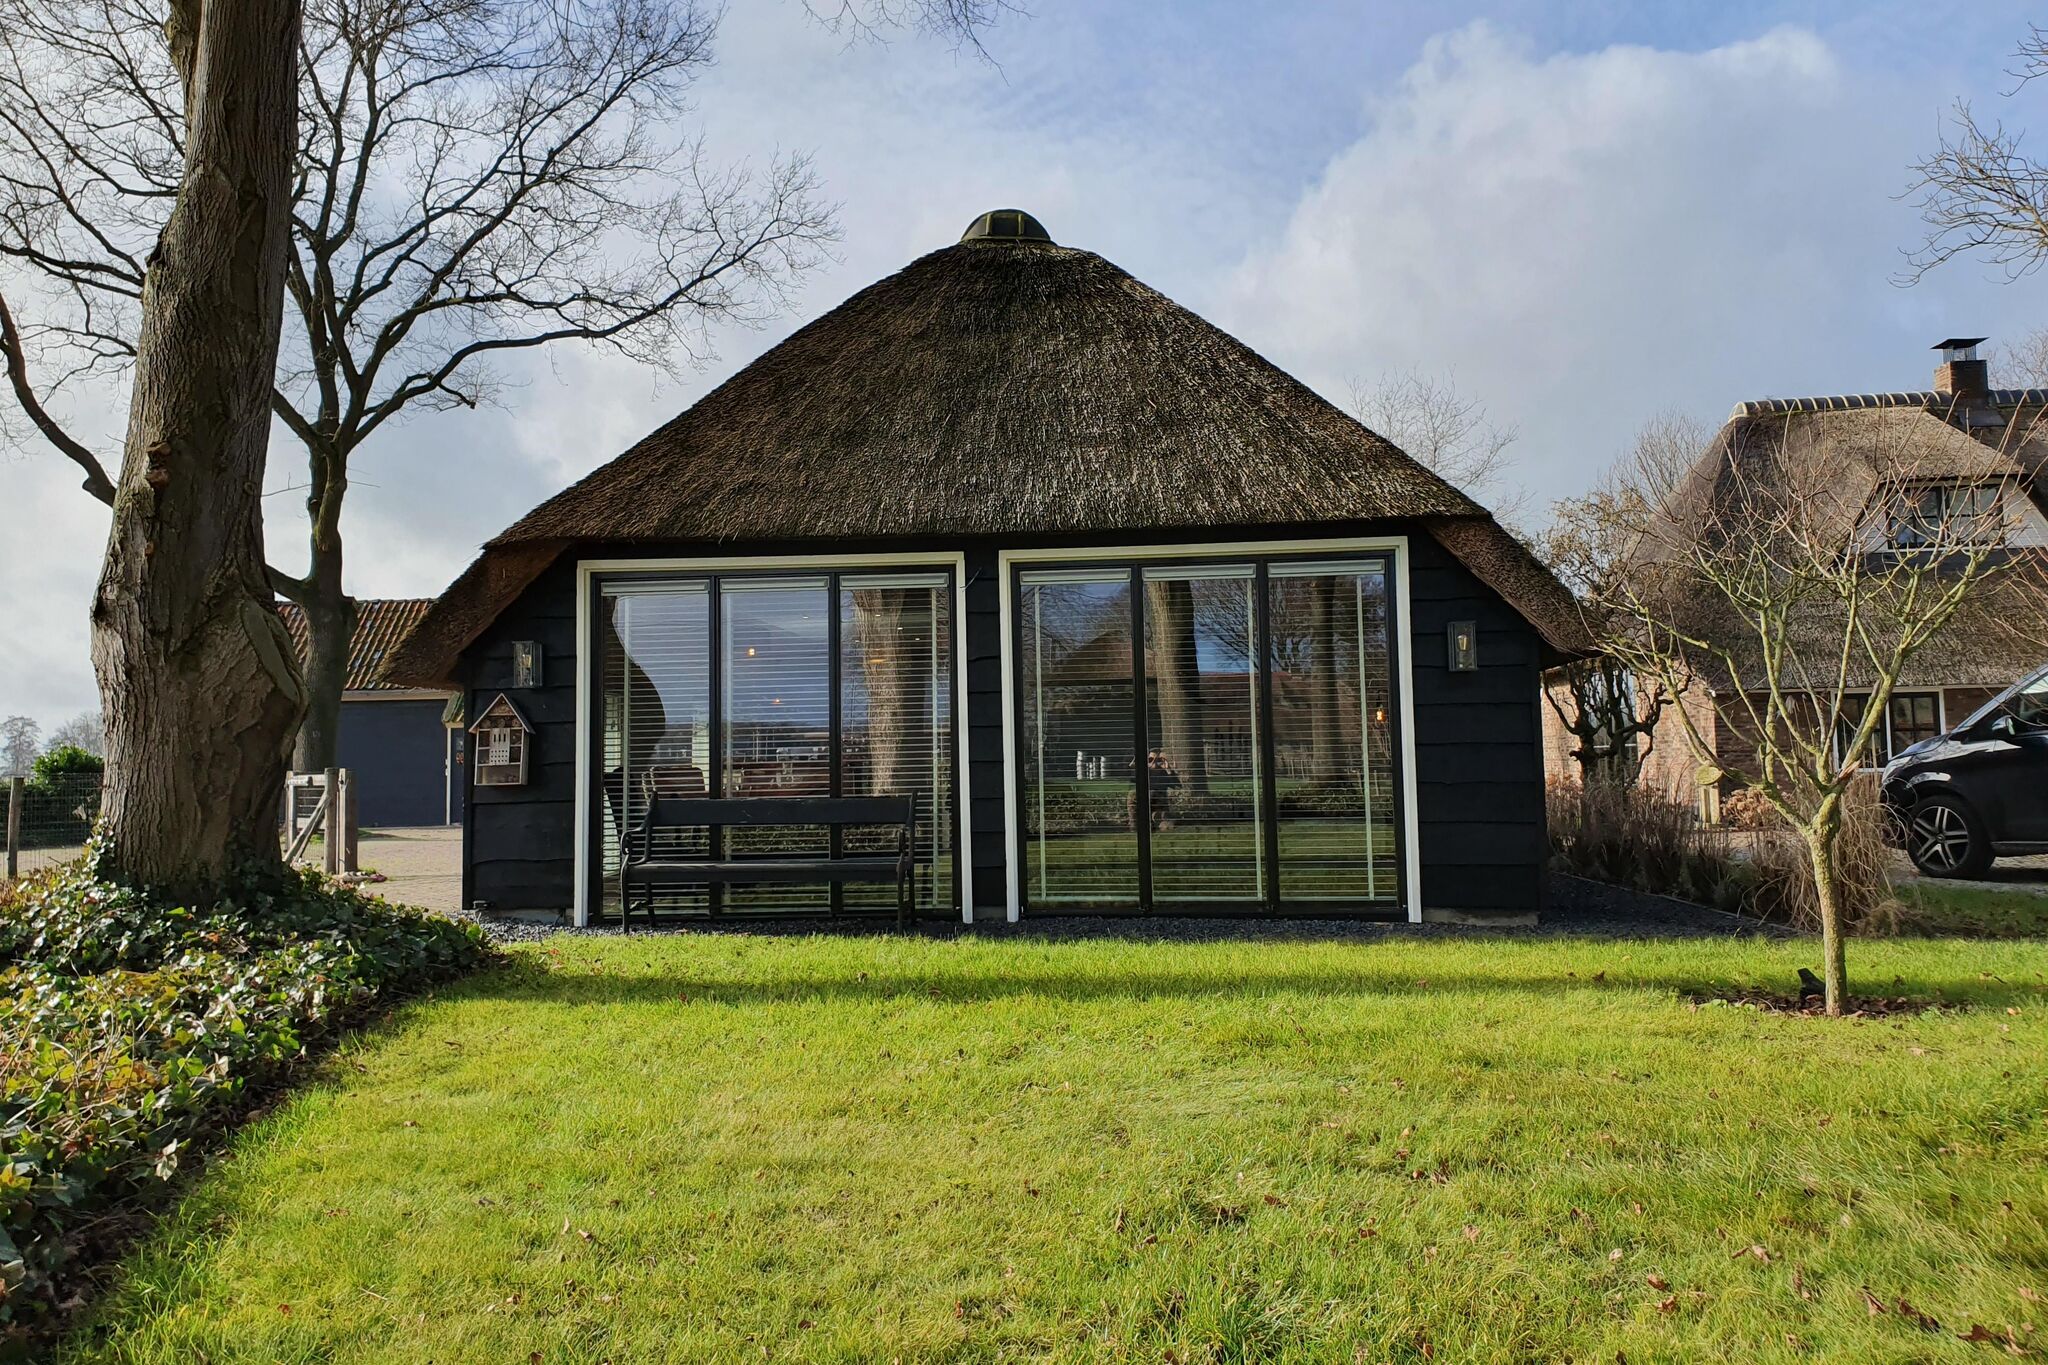 Holiday home Heeresteeg in Nieuwleusen with garden